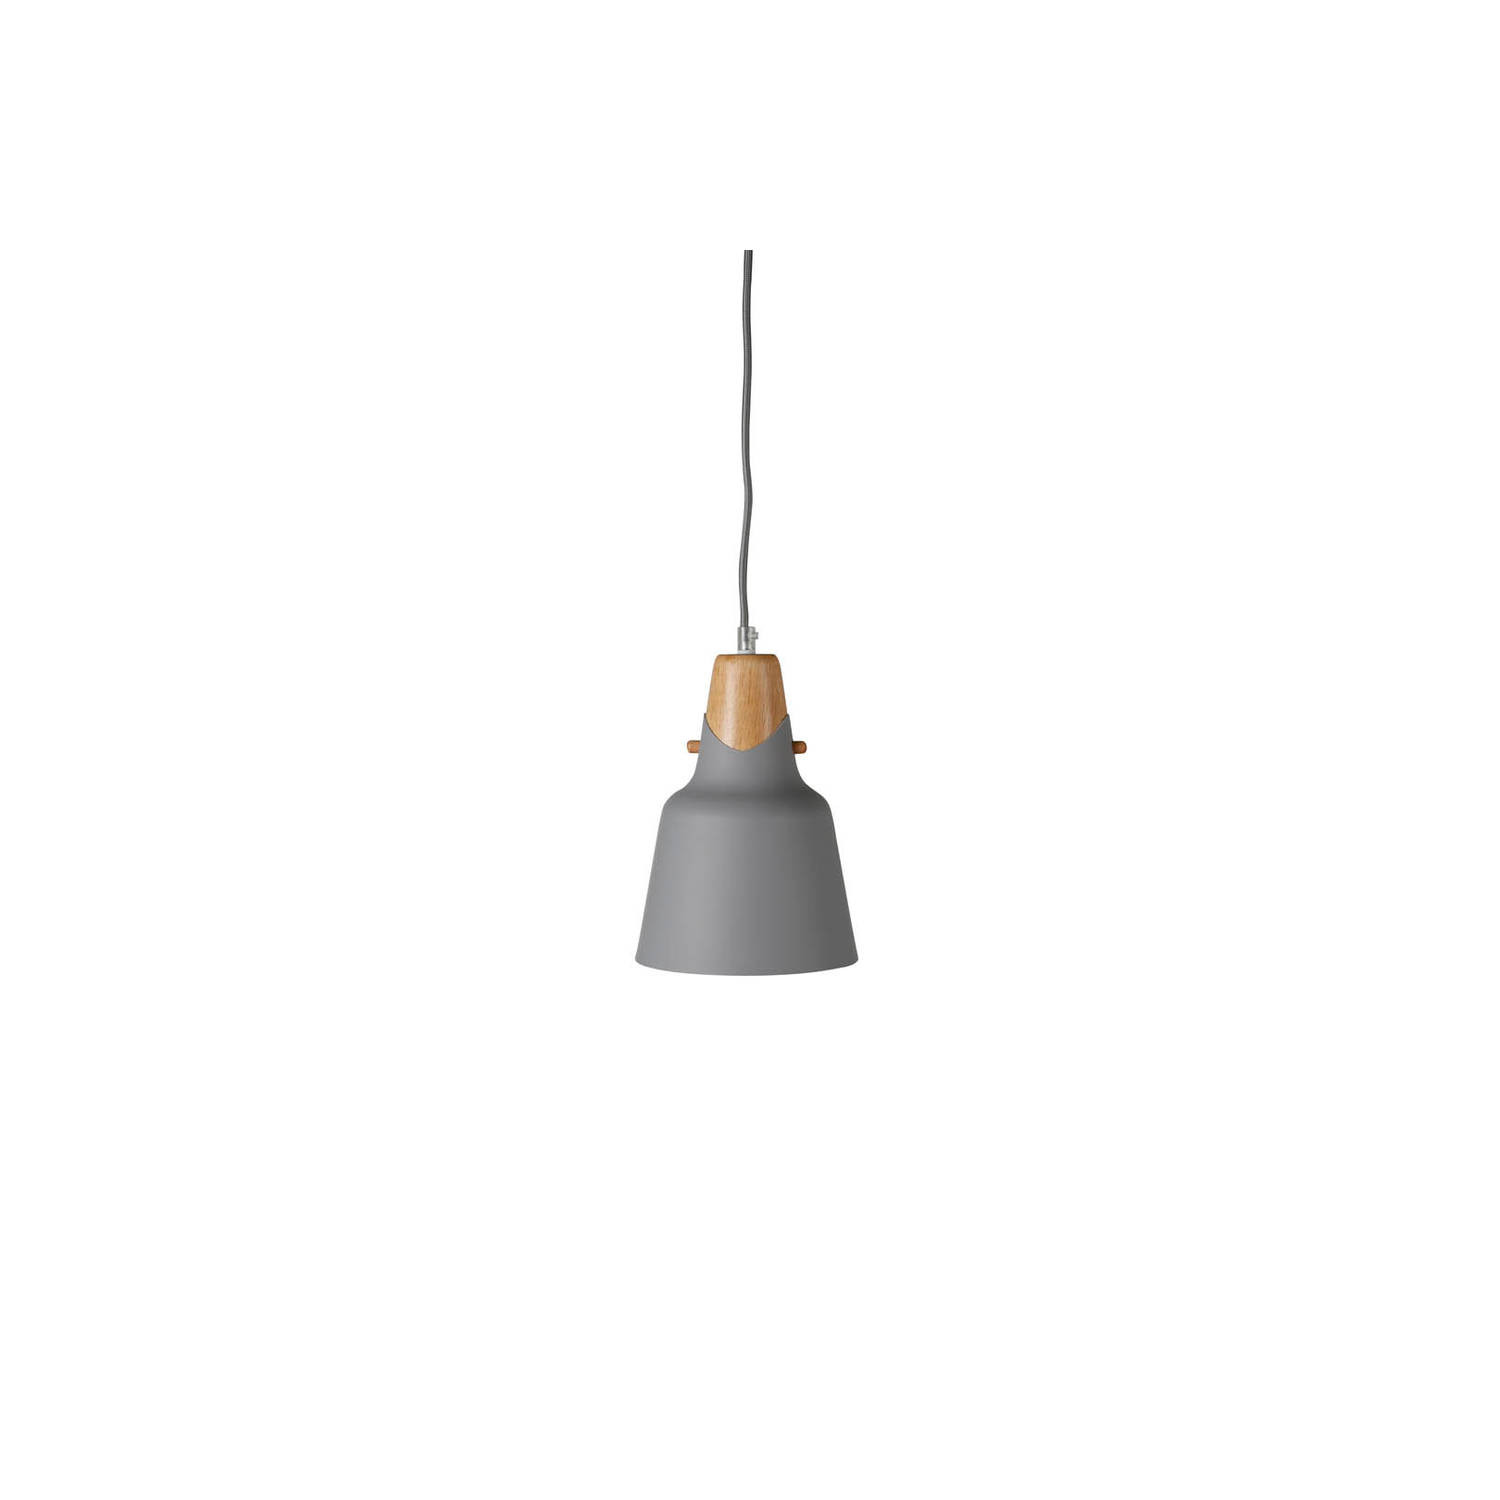 Rigel verlichting hanglamp Ø16cm aluminum grijs, hout.